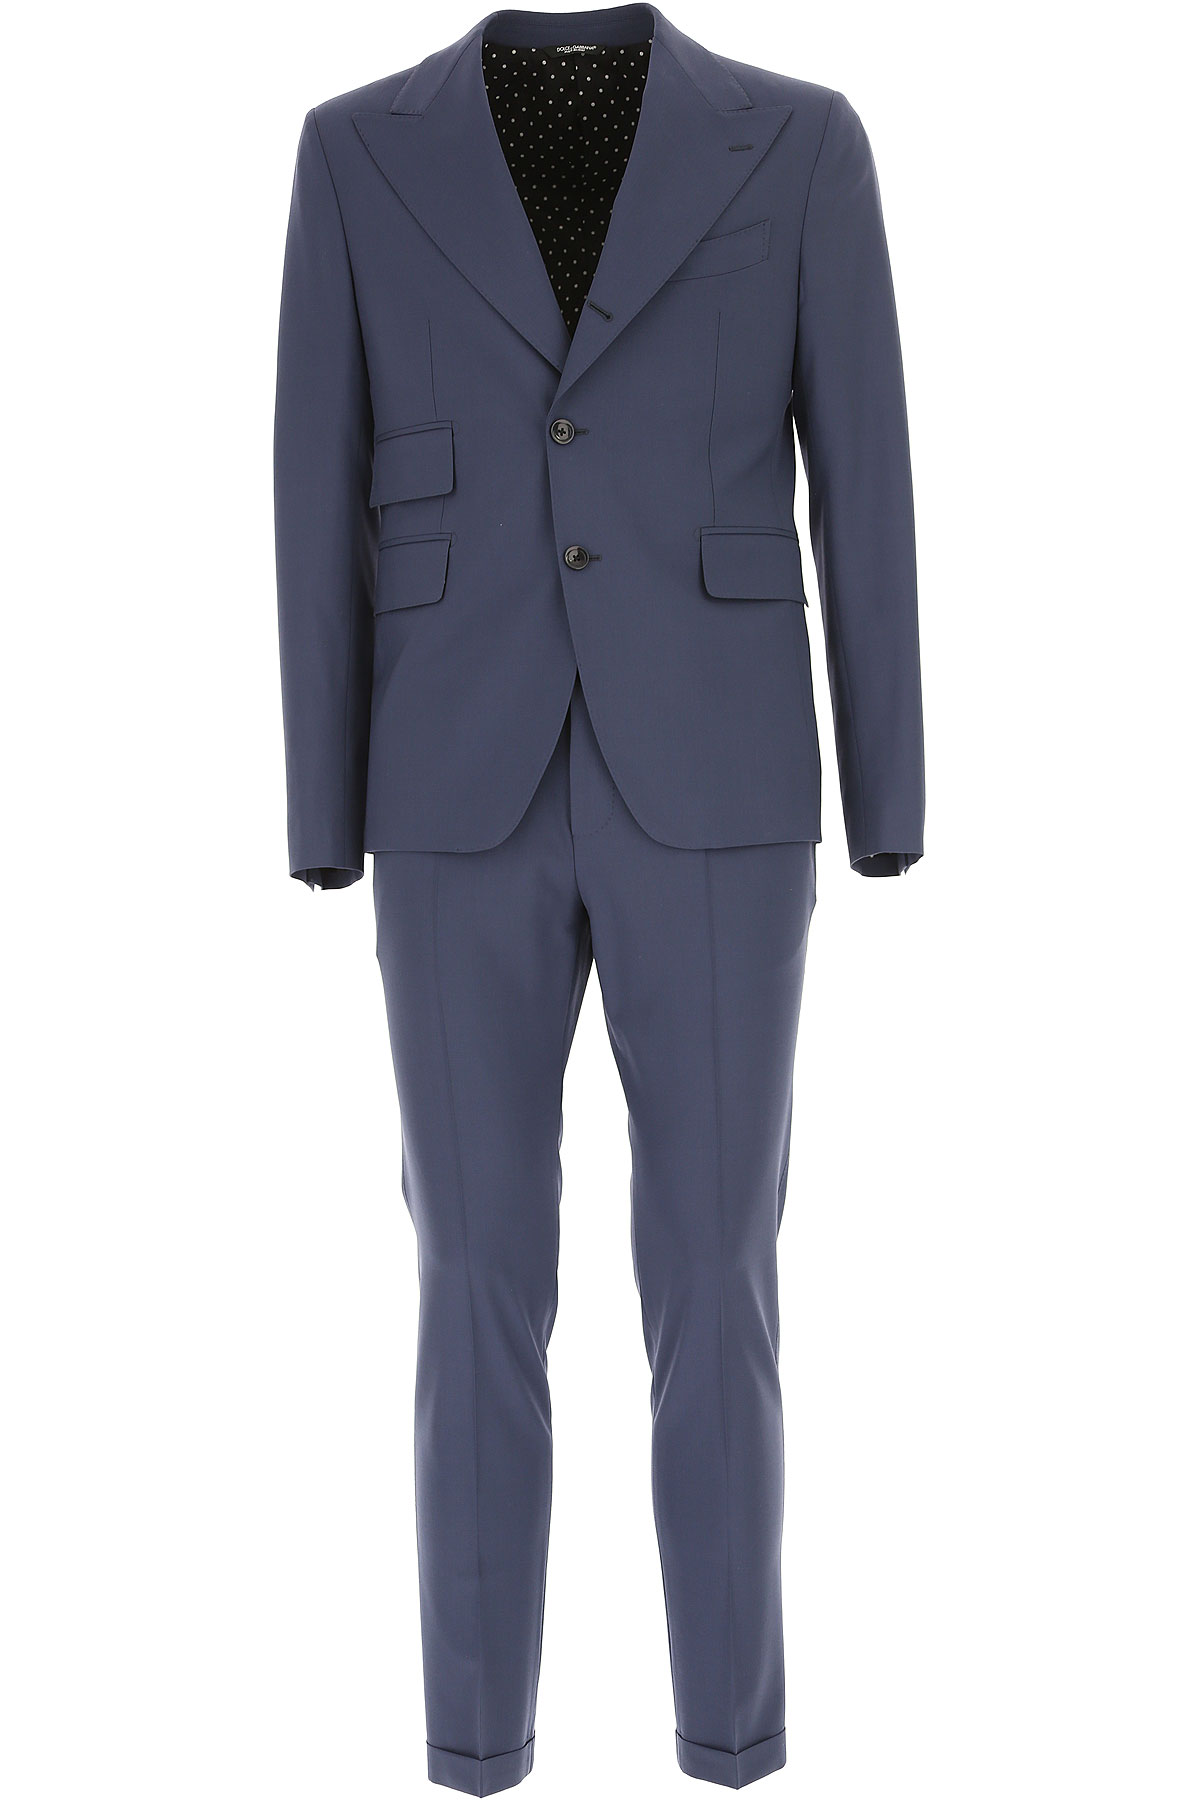 Dolce & Gabbana Costume Homme Outlet, Bleu de Prusse Cadet, Laine, 2017, L M XL XXL